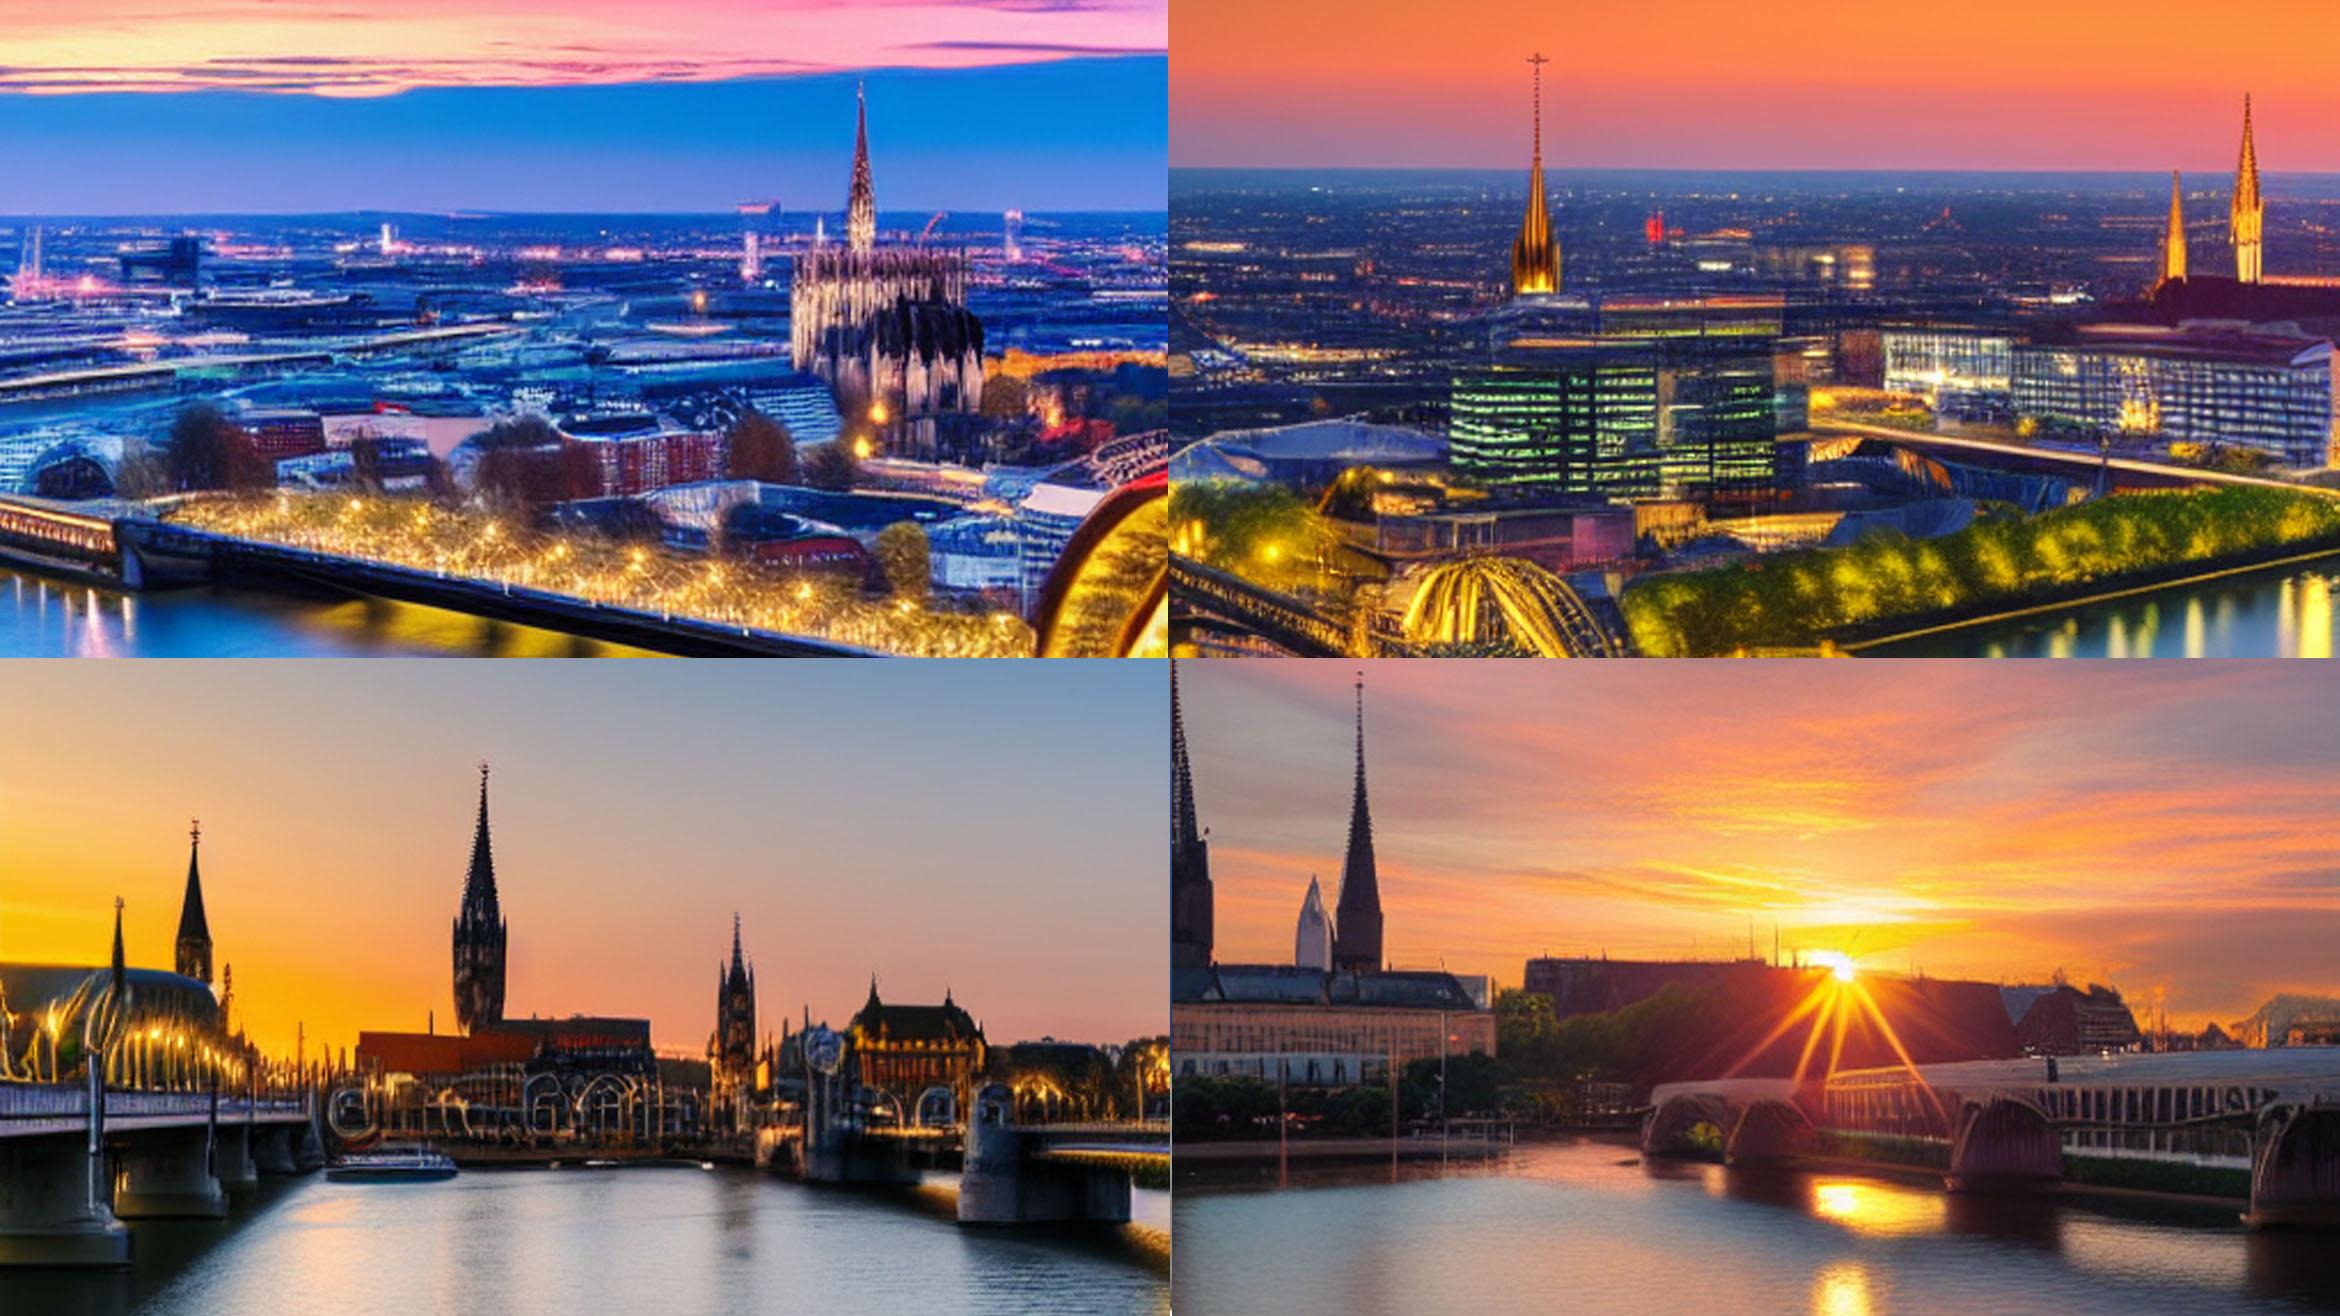 Köln im Sonnenuntergang, gestaltet von einer KI. Stimmungsvoll und wiedererkennbar, aber man sollte keine Detailtreue erwarten -